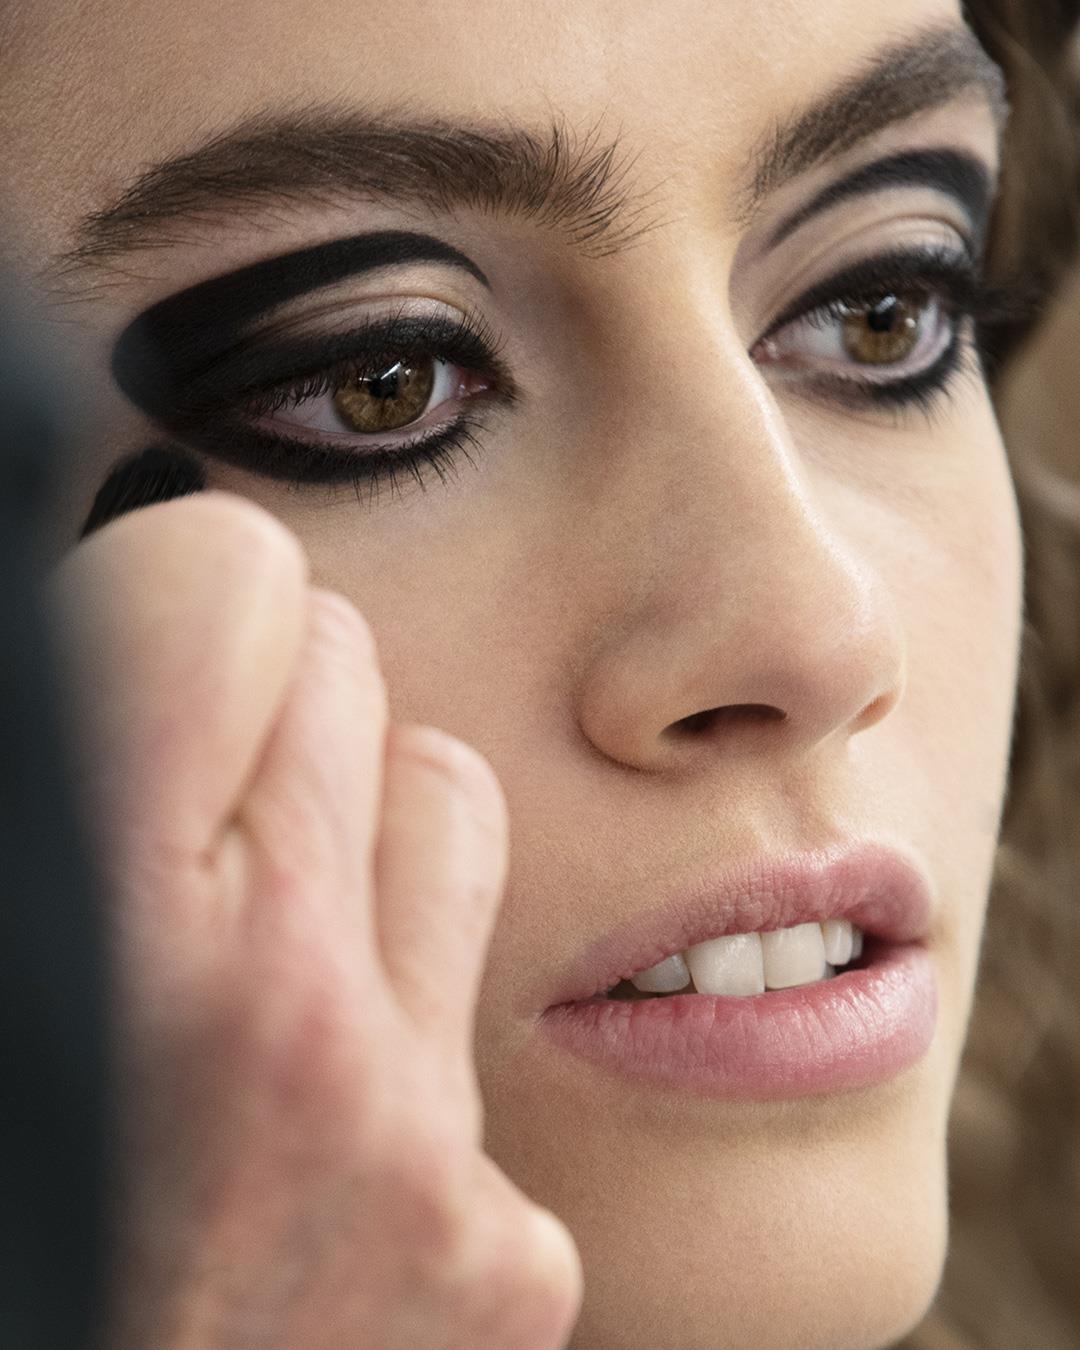 Maquillaje Chanel: Ojos muy marcados 